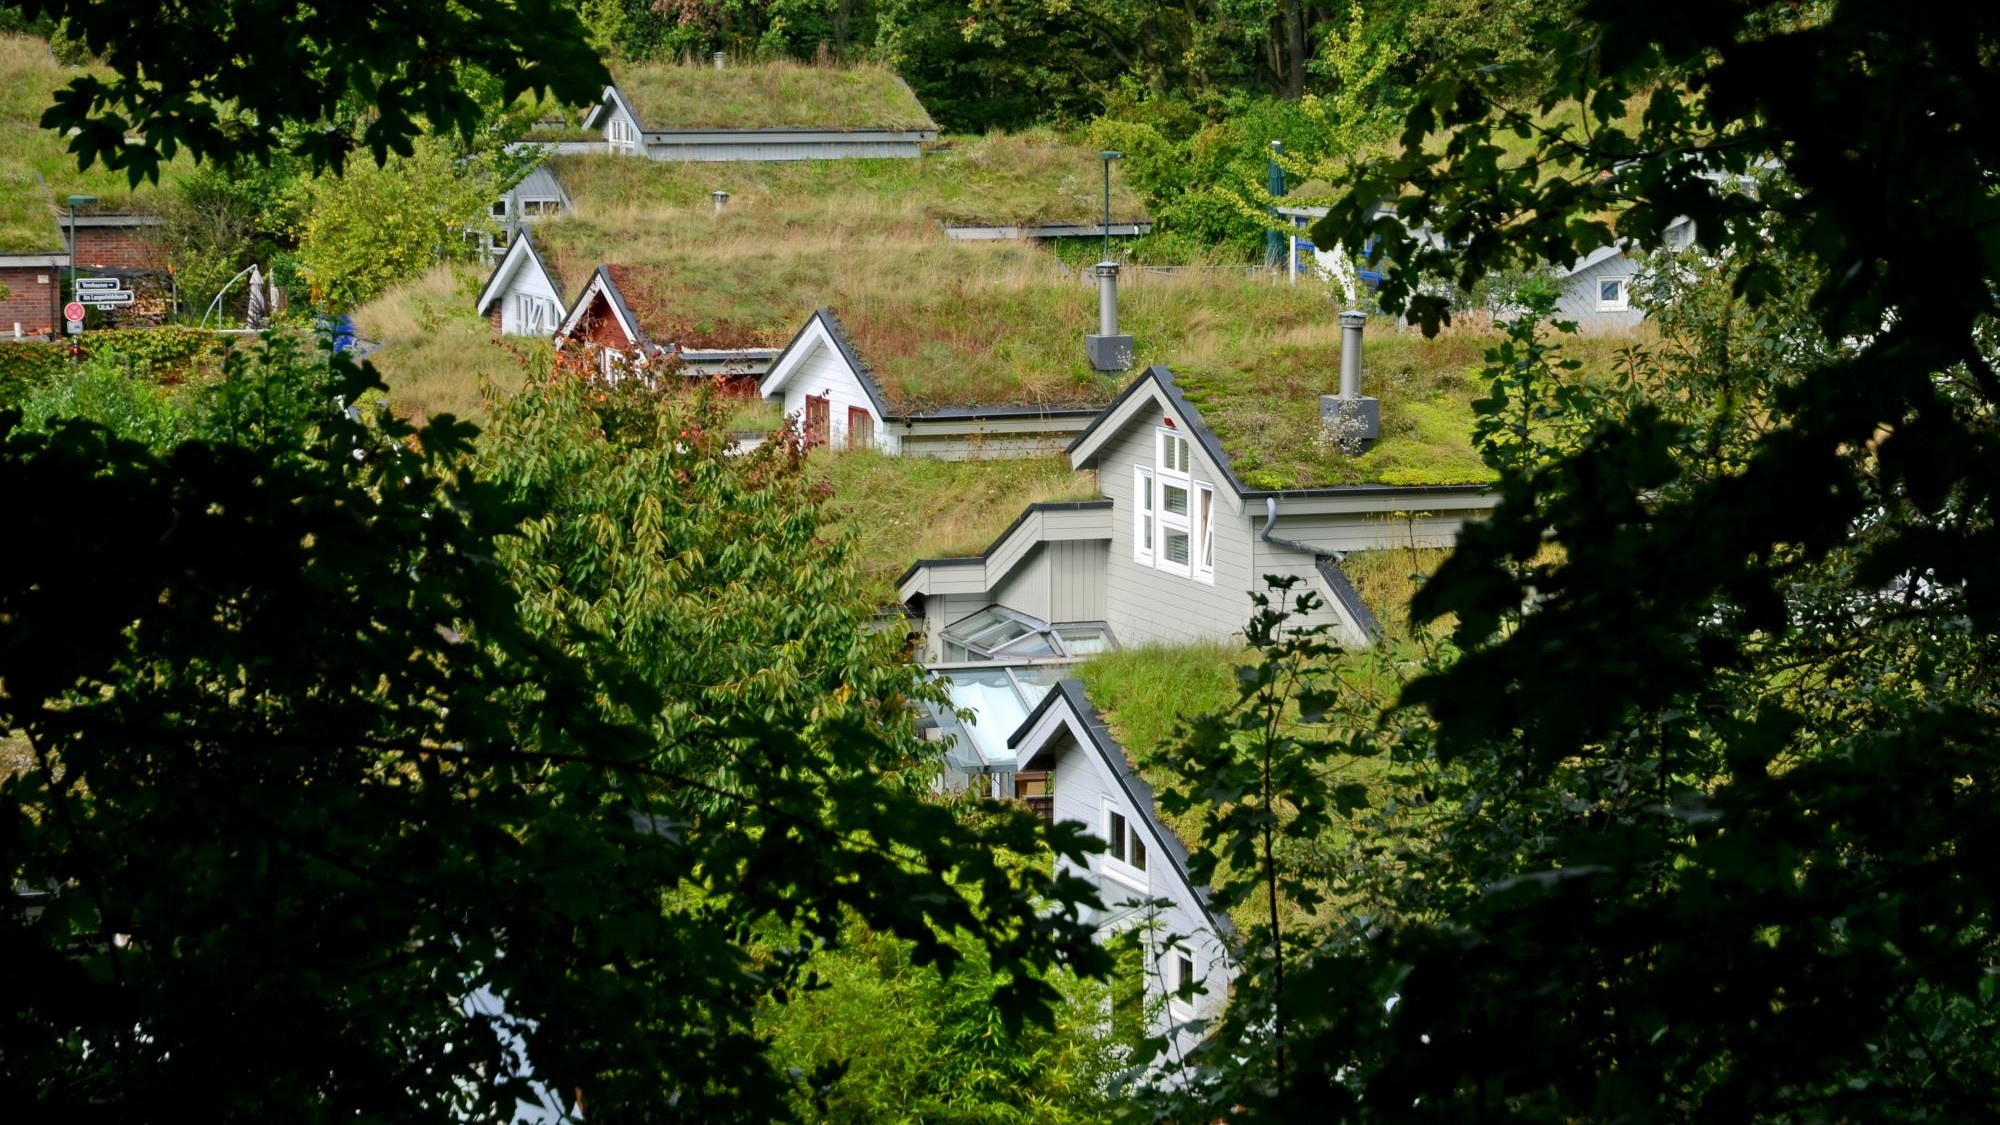 Mehrere Häuser mit komplett begrüntem Dach